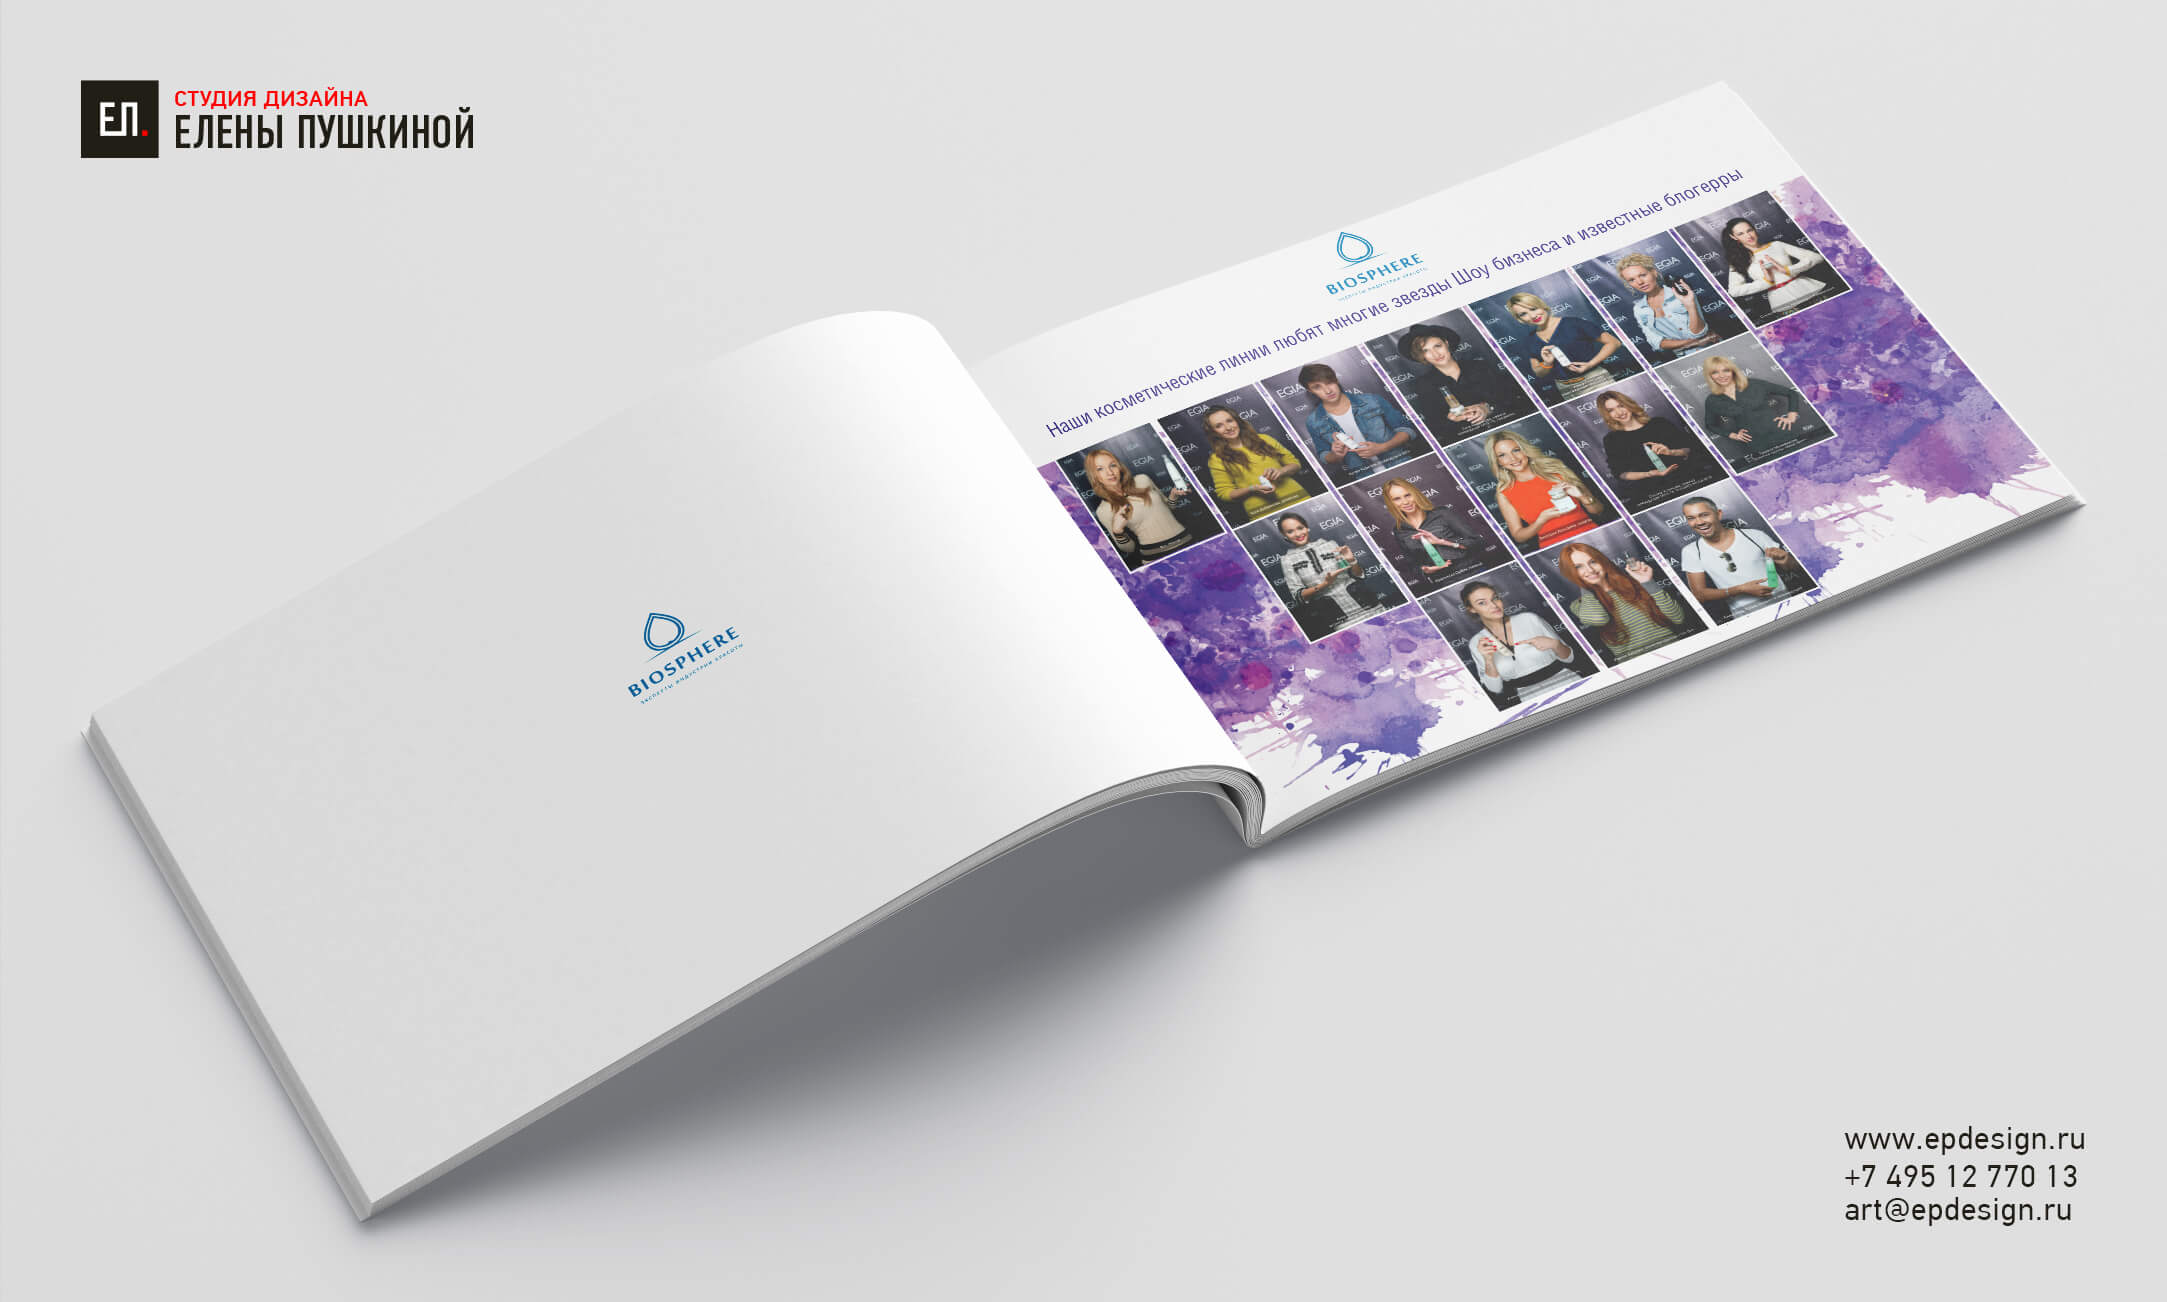 Презентация косметической компании «Биосфера» — разработка дизайна с «нуля» и вёрстка брошюры Дизайн каталогов Портфолио